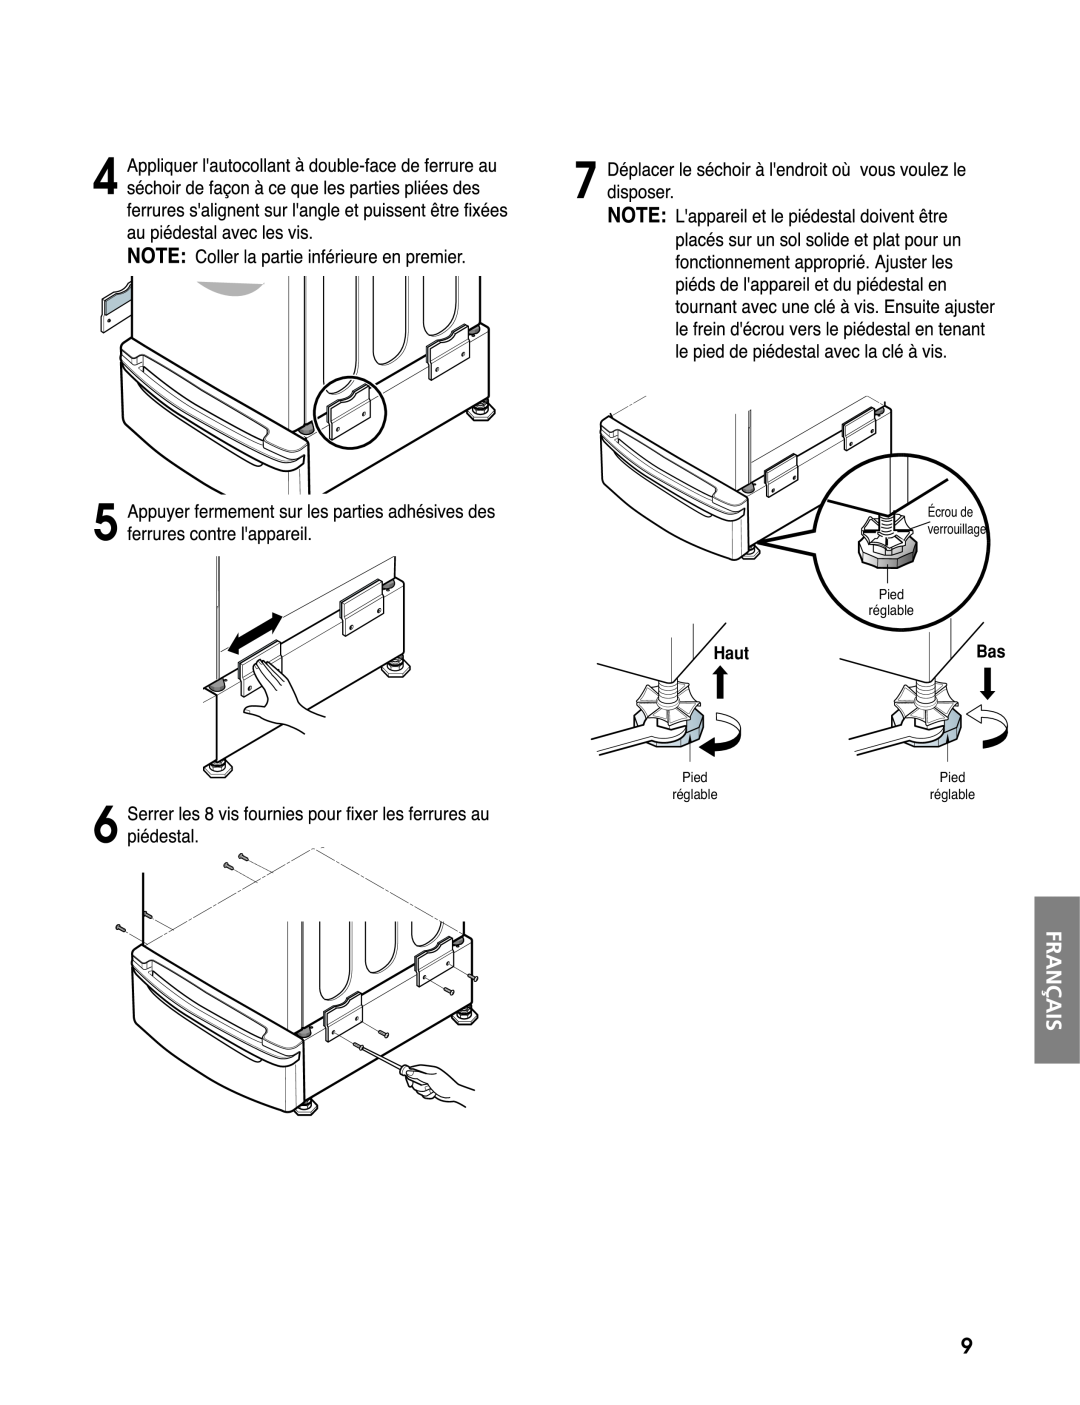 LG Electronics 3828ER3020V installation instructions Haut, Pied réglable, Écrou de verrouillage 